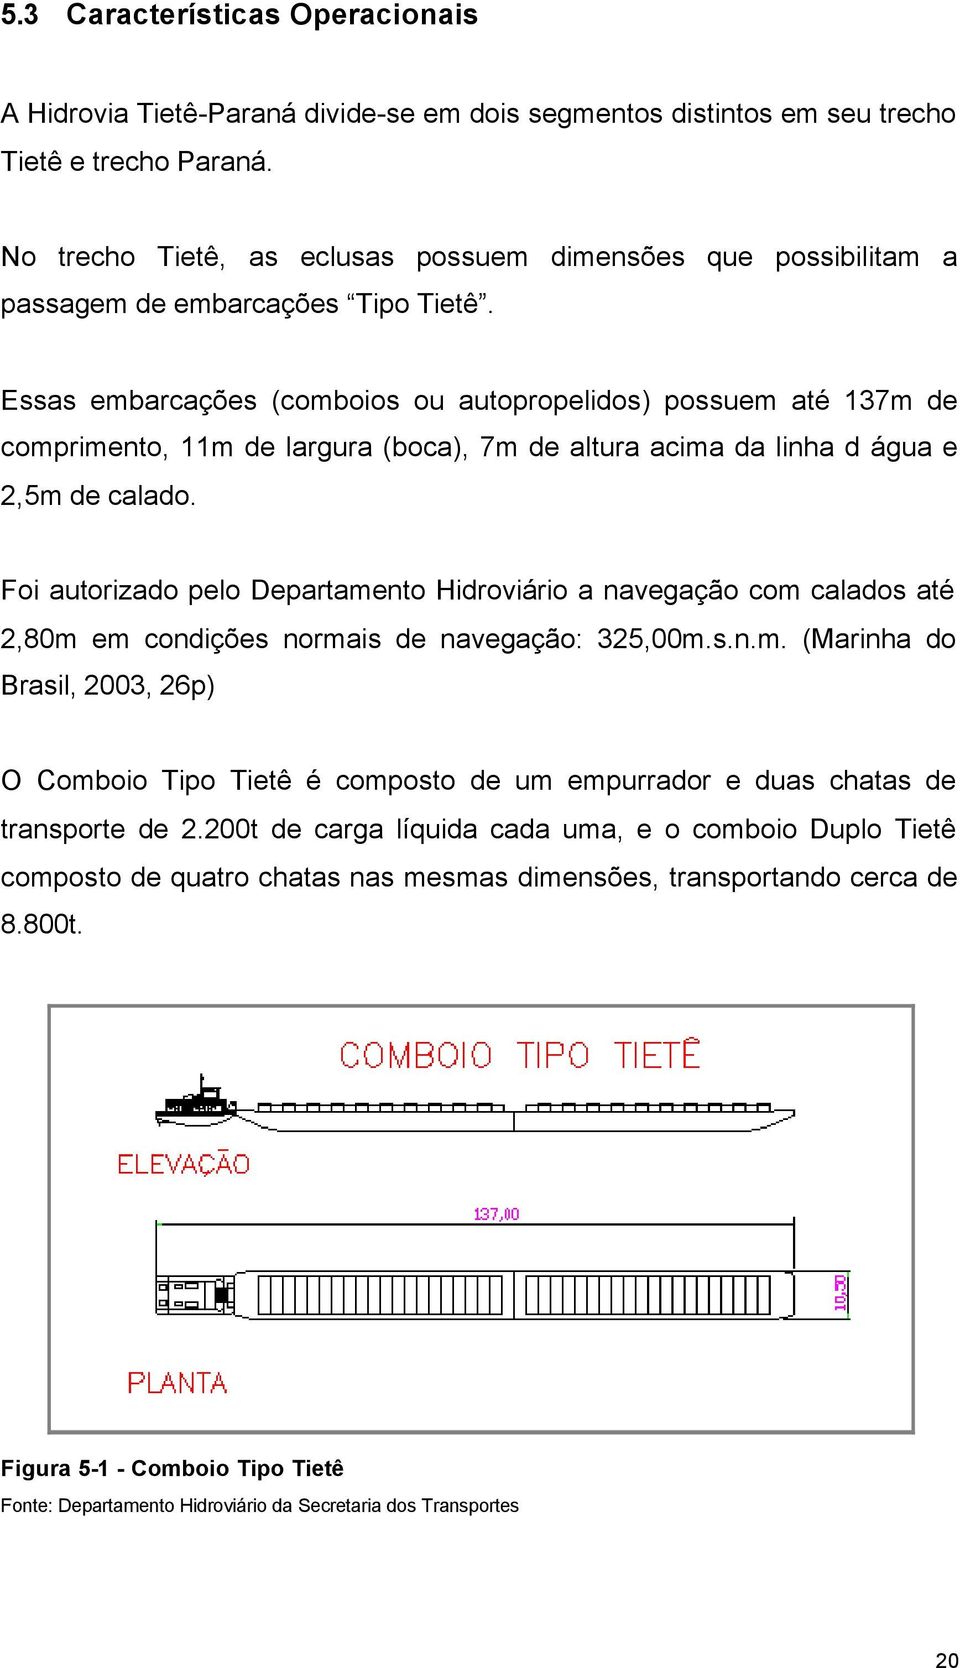 Essas embarcações (comboios ou autopropelidos) possuem até 137m de comprimento, 11m de largura (boca), 7m de altura acima da linha d água e 2,5m de calado.